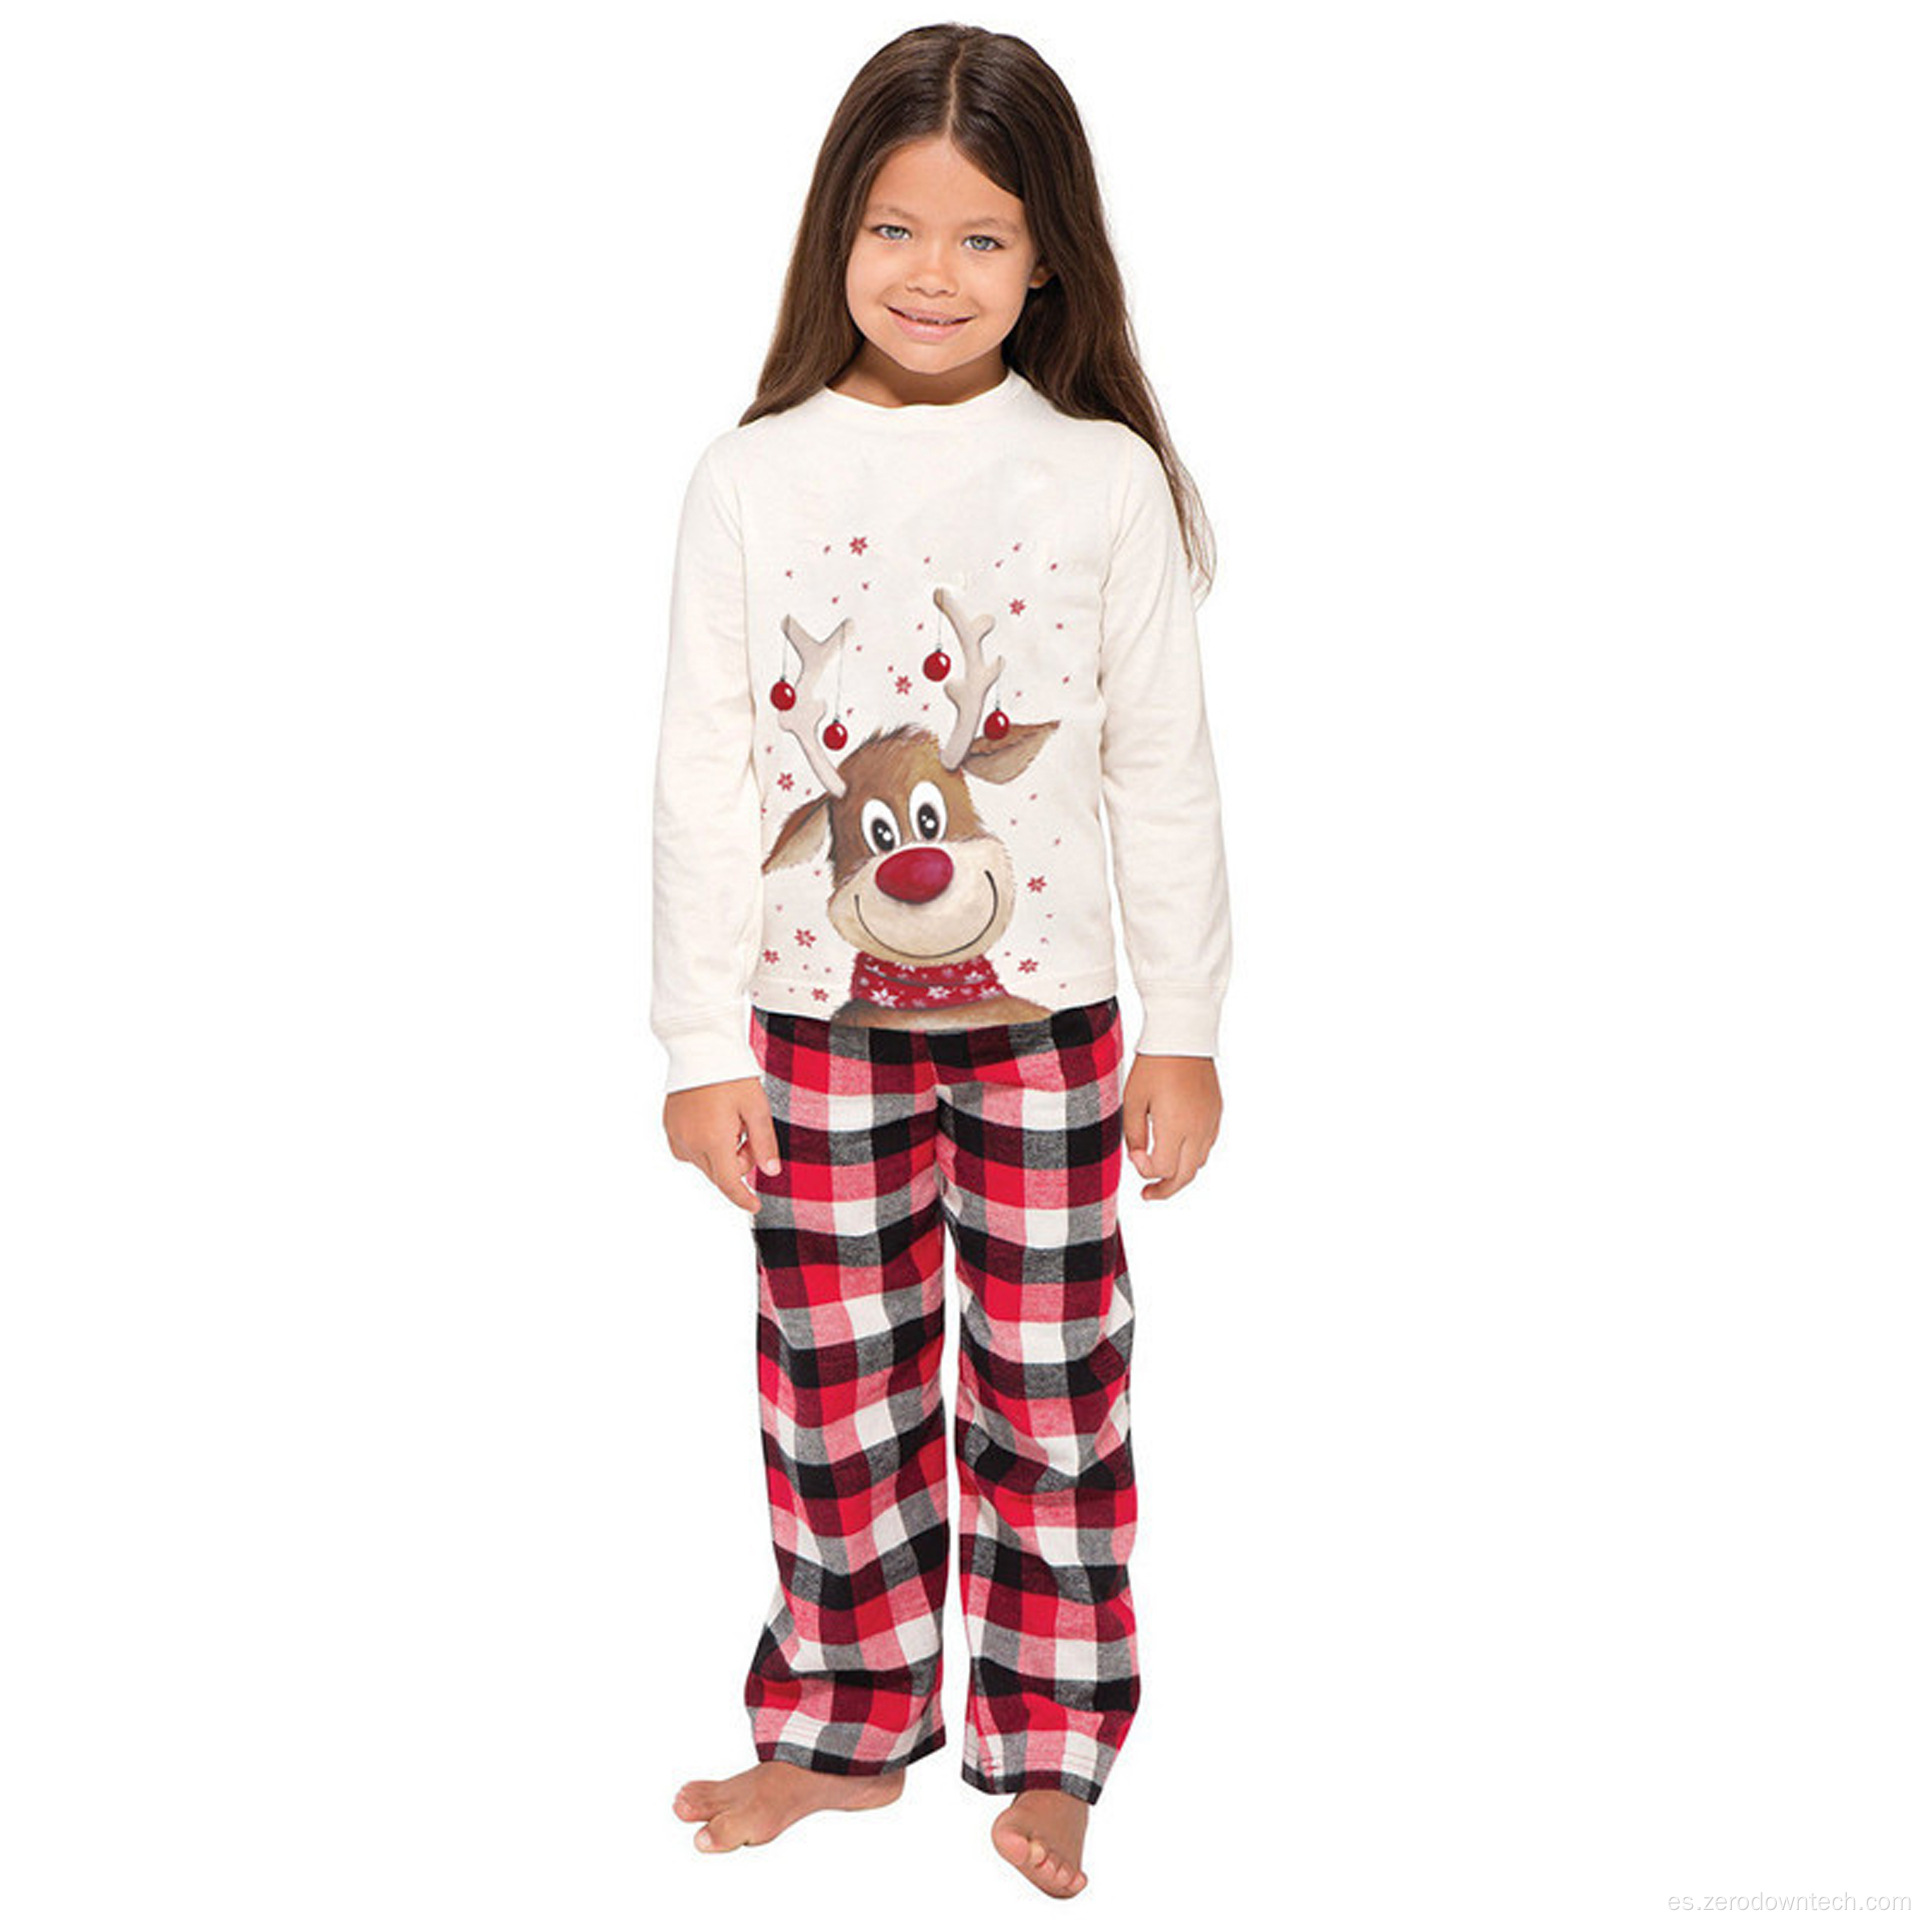 Conjuntos de pijamas navideños de moda para conjunto de pijamas de rayas